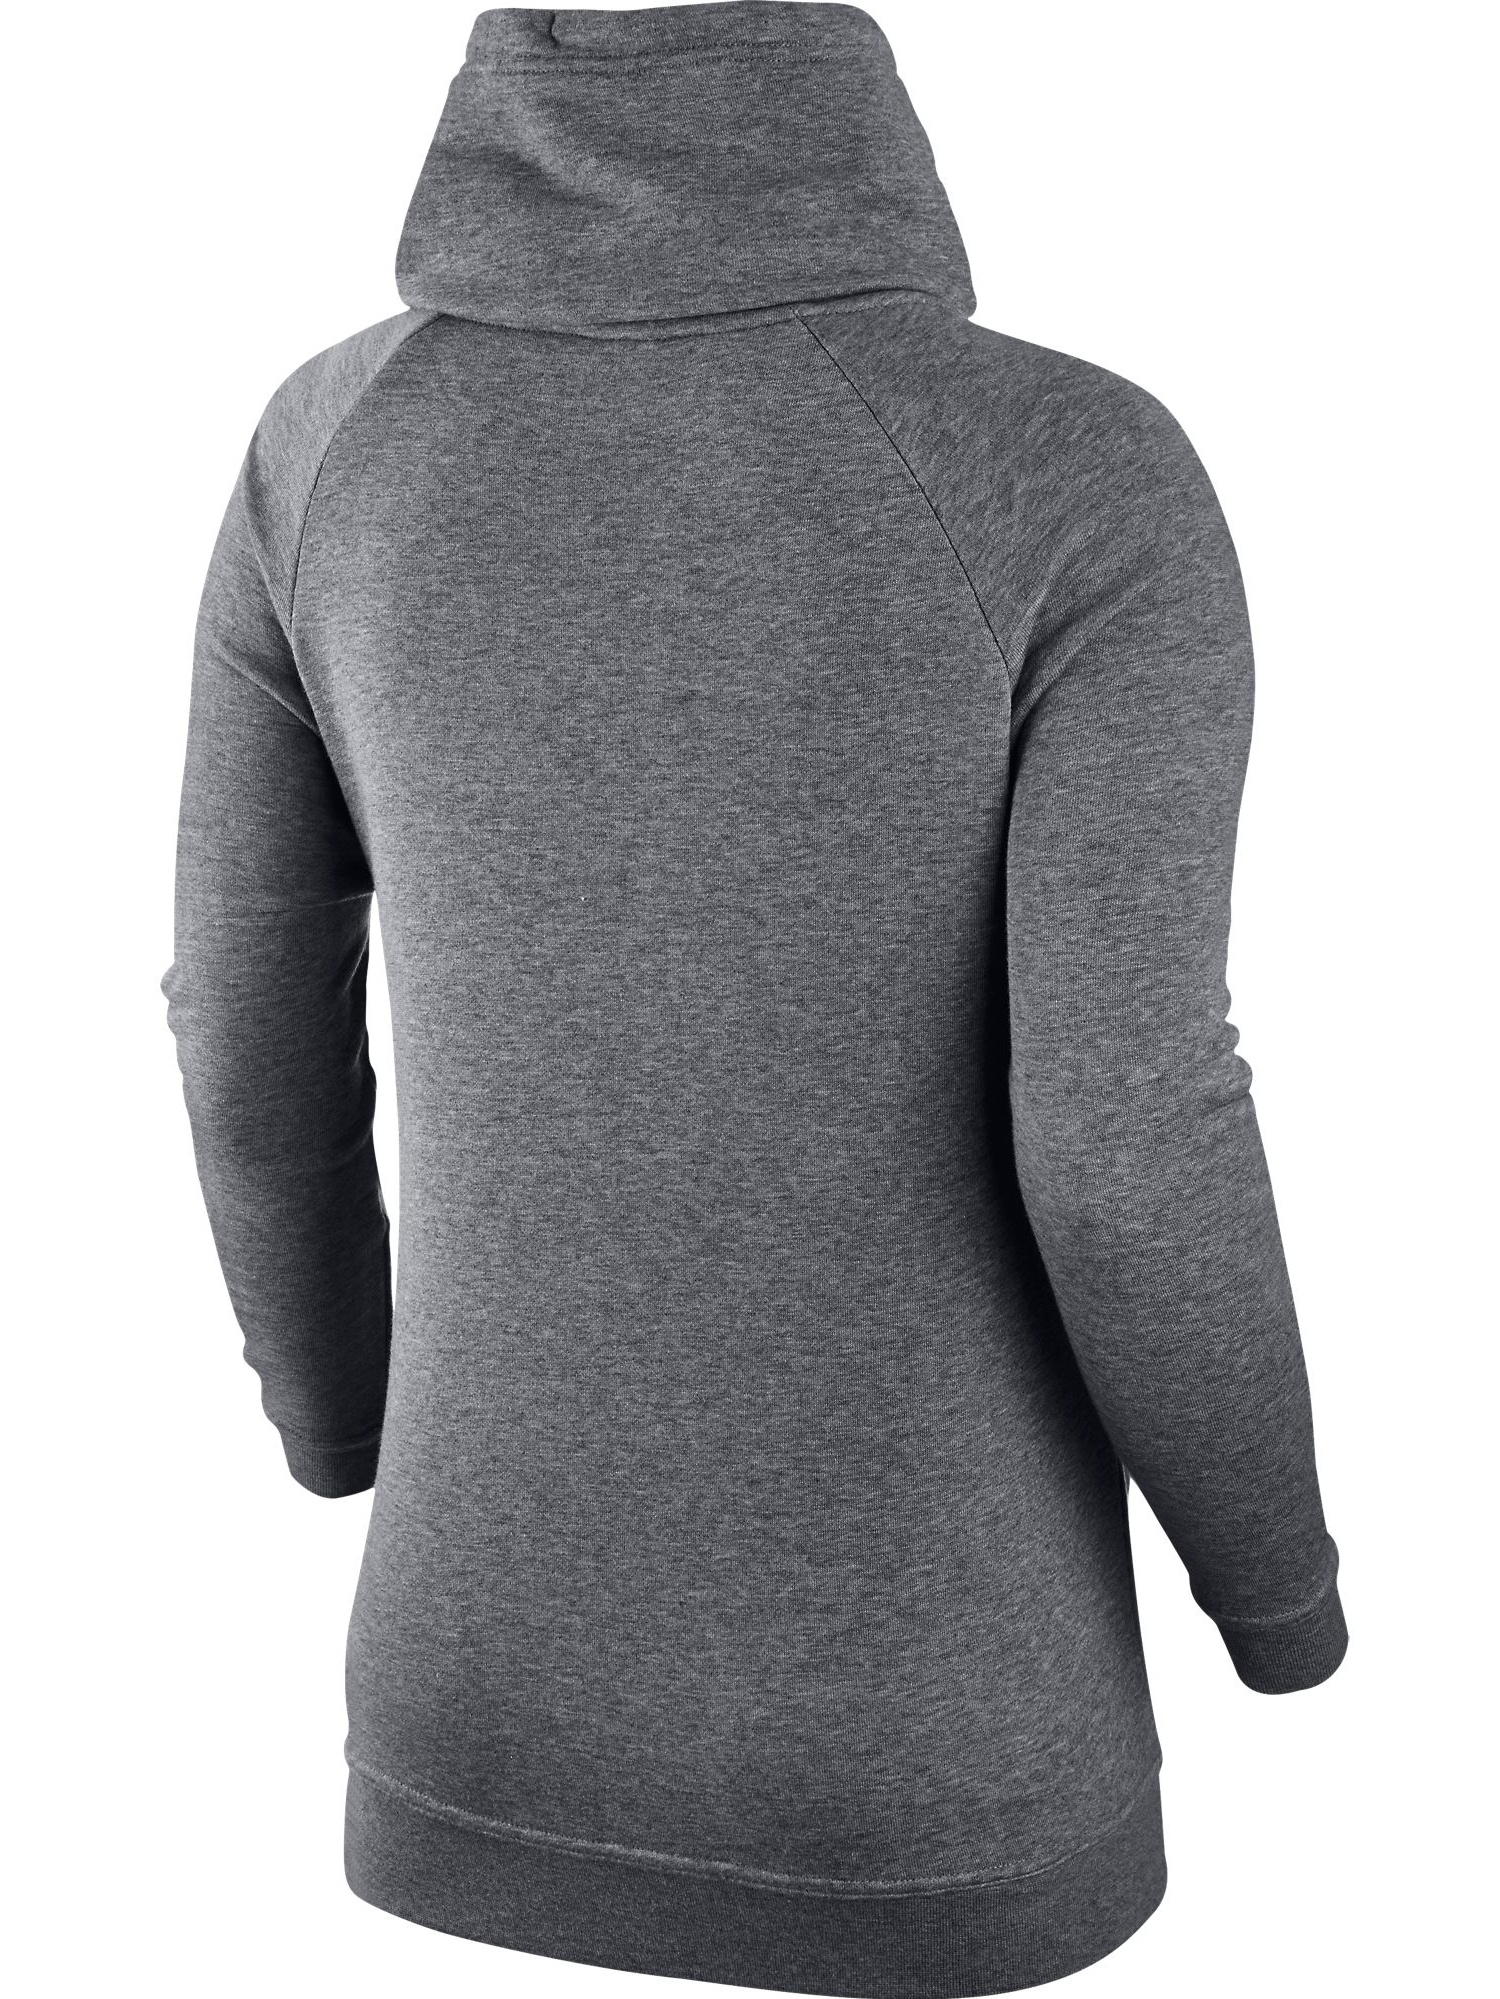 Nike Sportswear Modern Funnel Neck Women's Sweatshirt Grey/Black 803599-091 - image 2 of 2